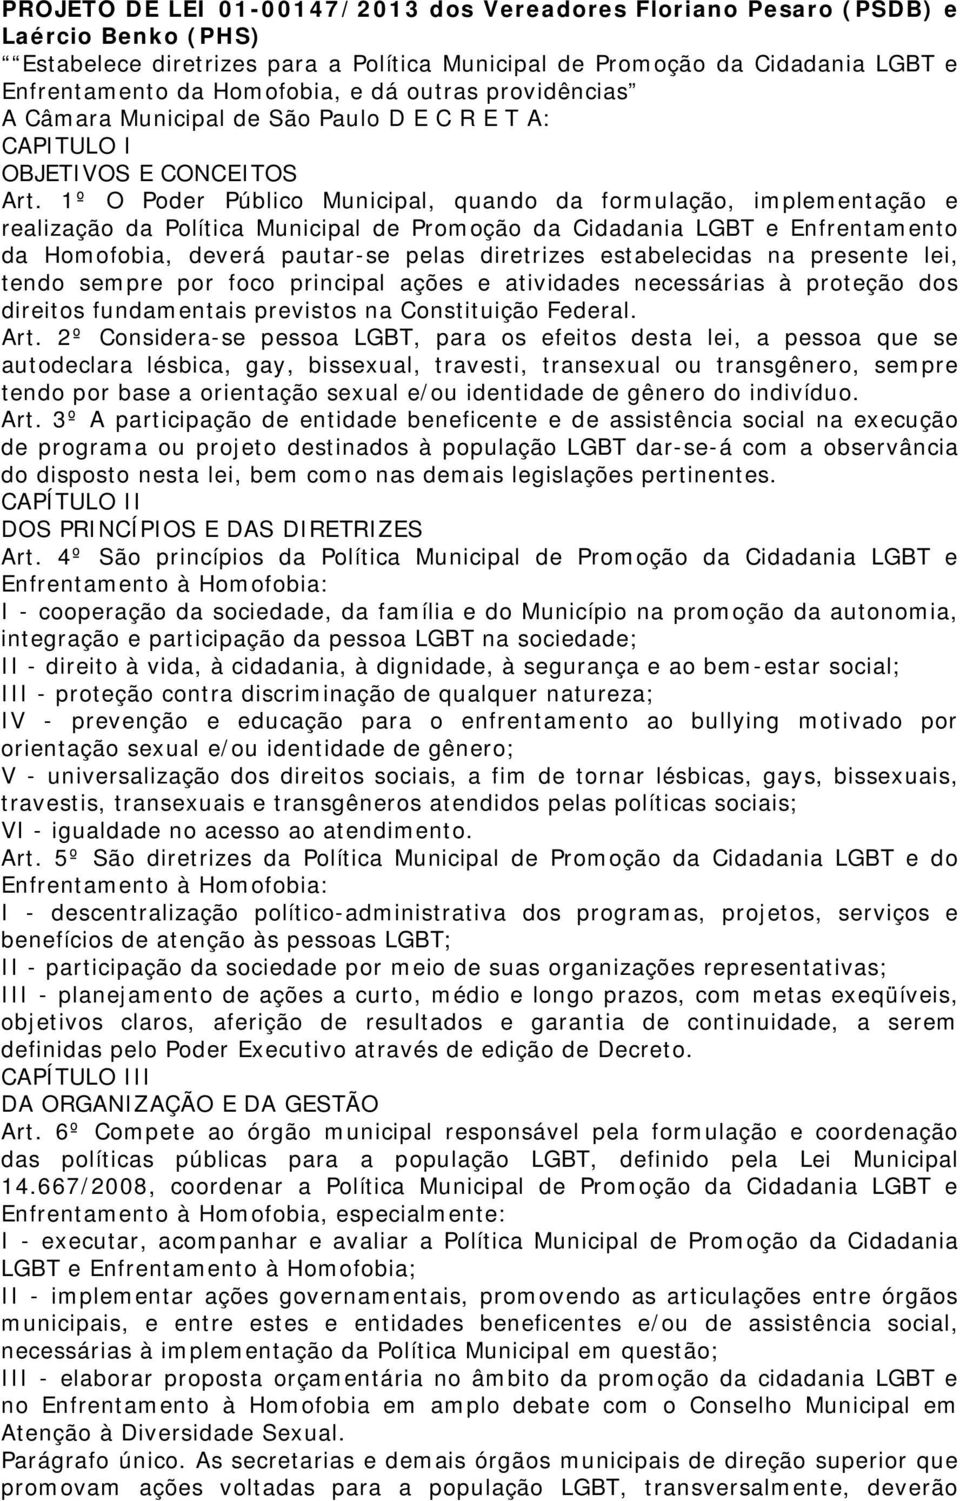 1º O Poder Público Municipal, quando da formulação, implementação e realização da Política Municipal de Promoção da Cidadania LGBT e Enfrentamento da Homofobia, deverá pautar-se pelas diretrizes